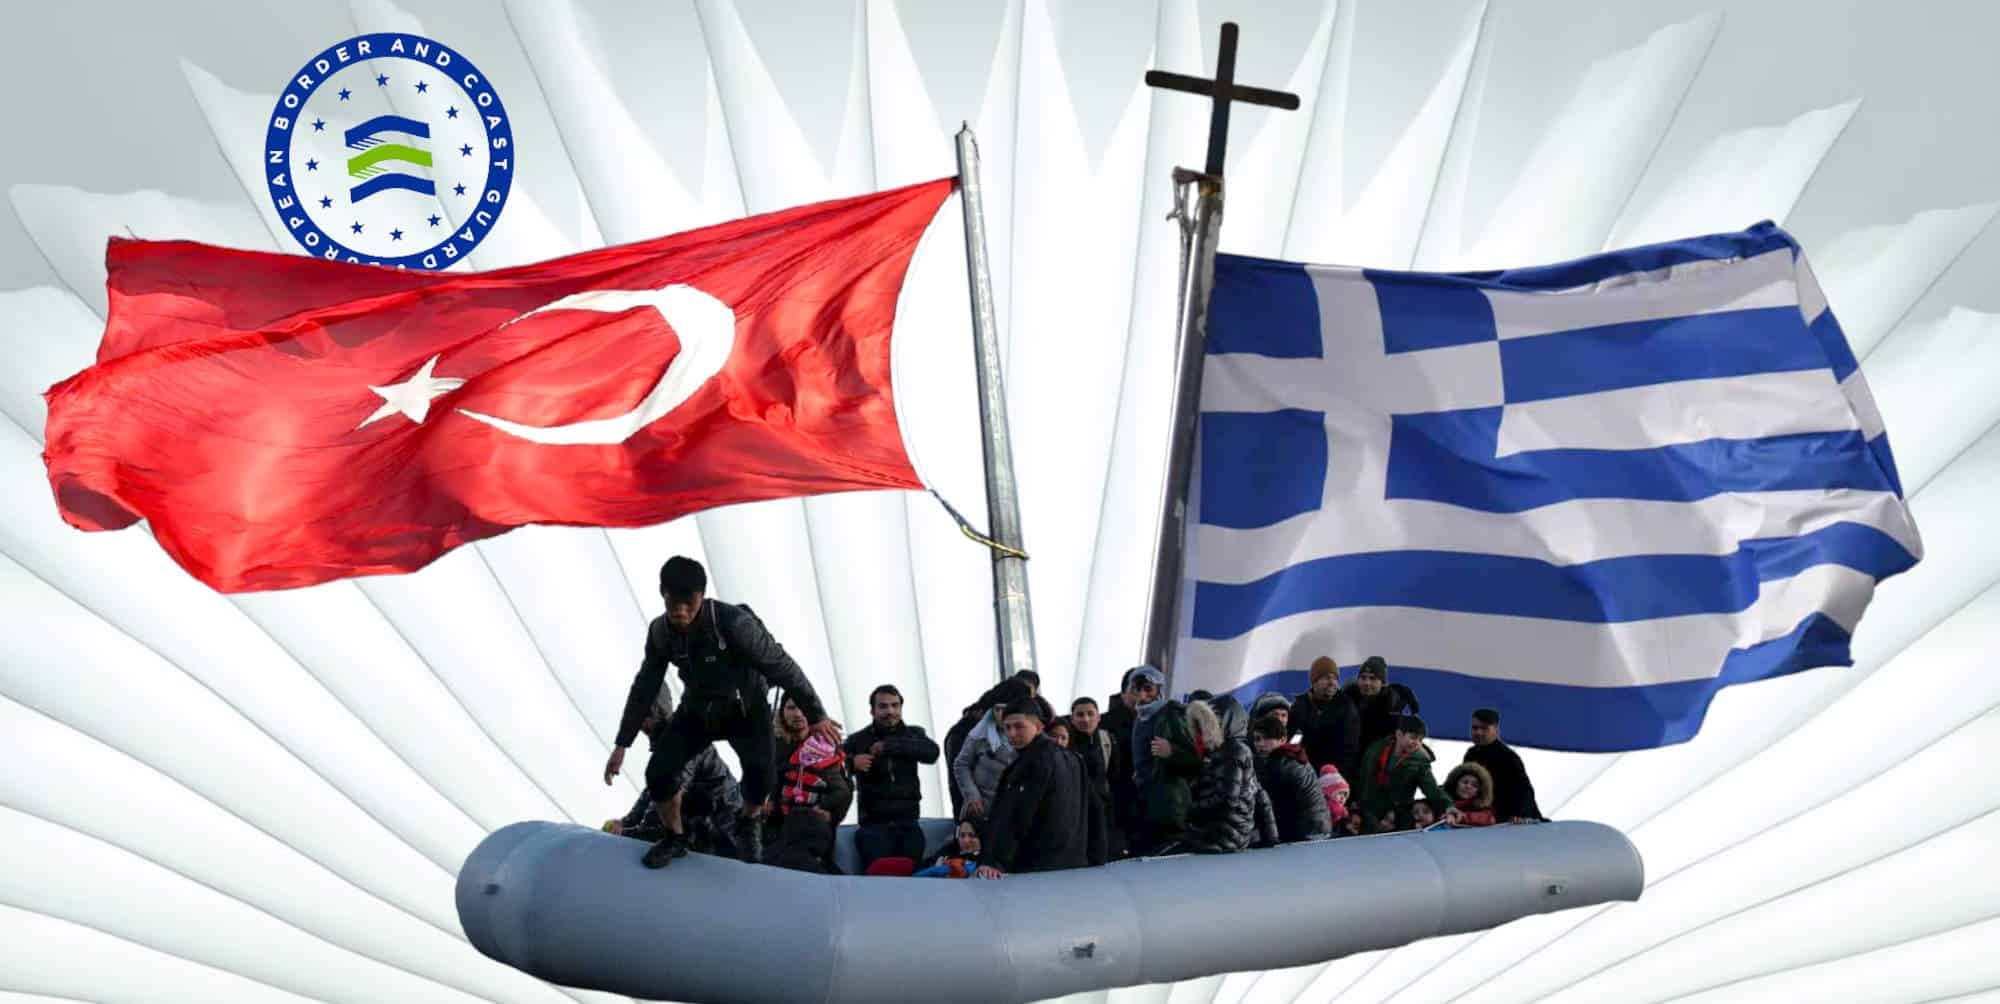 Σωστική λέμβος με μετανάστες στο Αιγαίο, «μπαλάκι» μεταξύ Ελλάδας και Τουρκίας